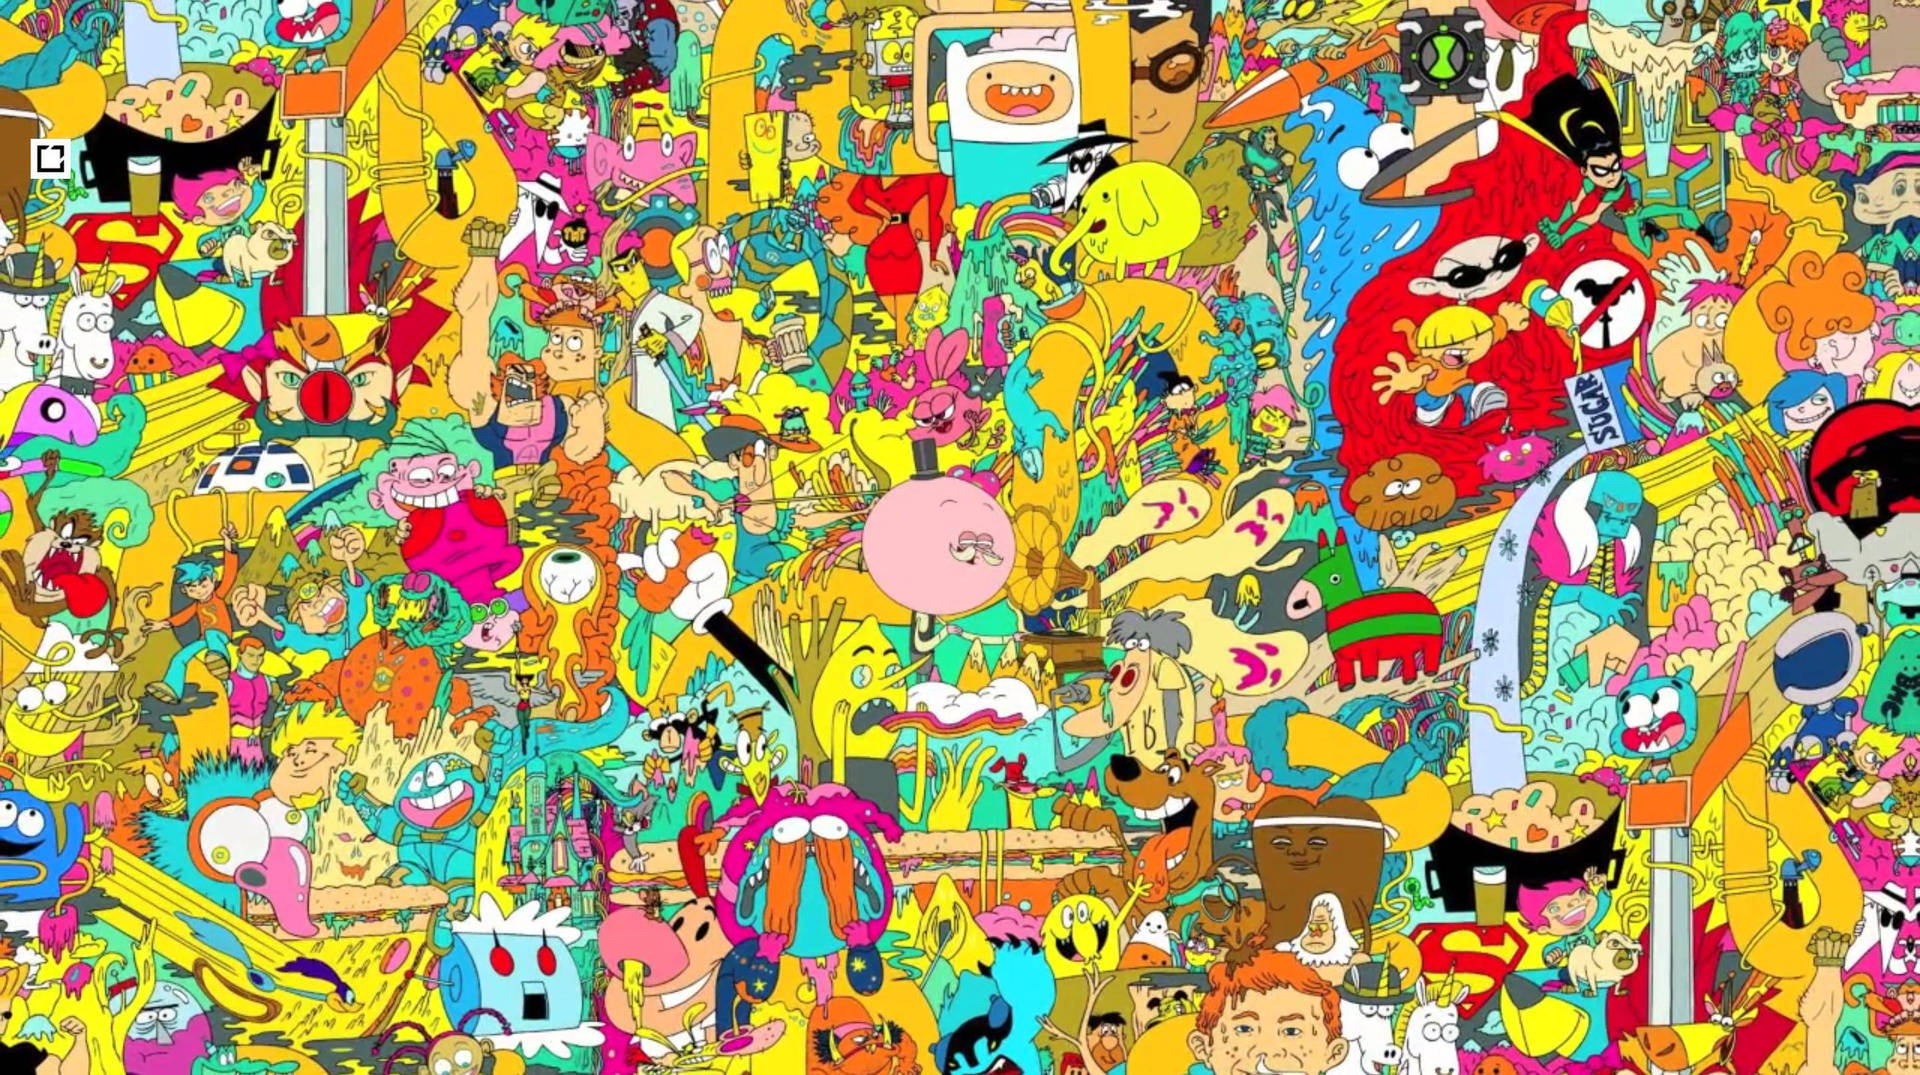 Färggladakaotiska Cartoon Network-karaktärer. Wallpaper